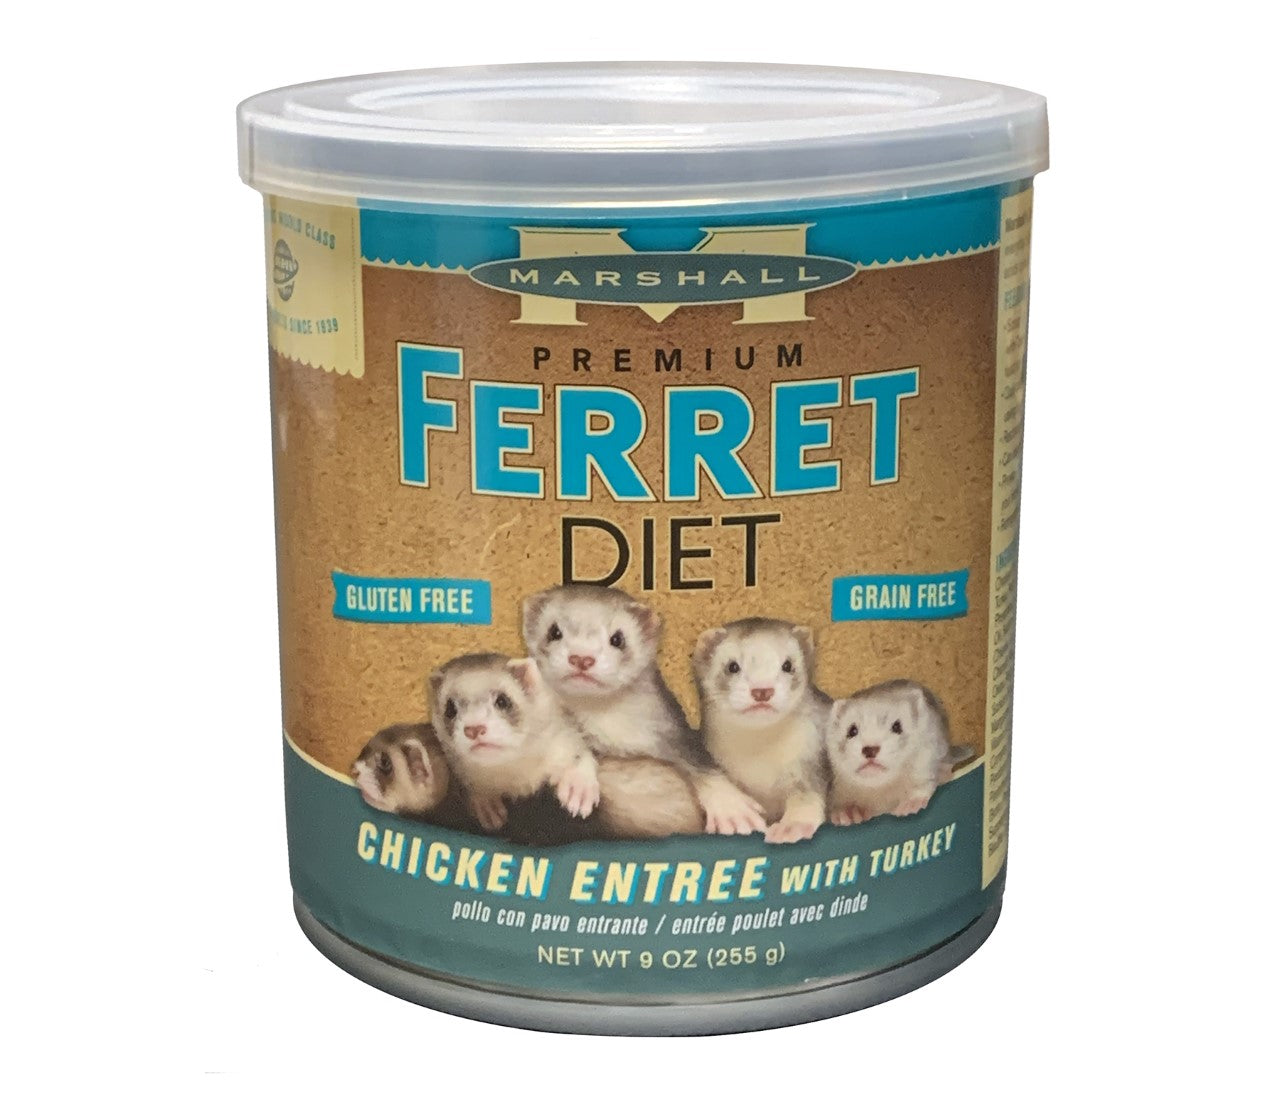 Marshall Premium Ferret Diet -Turkey, Canned